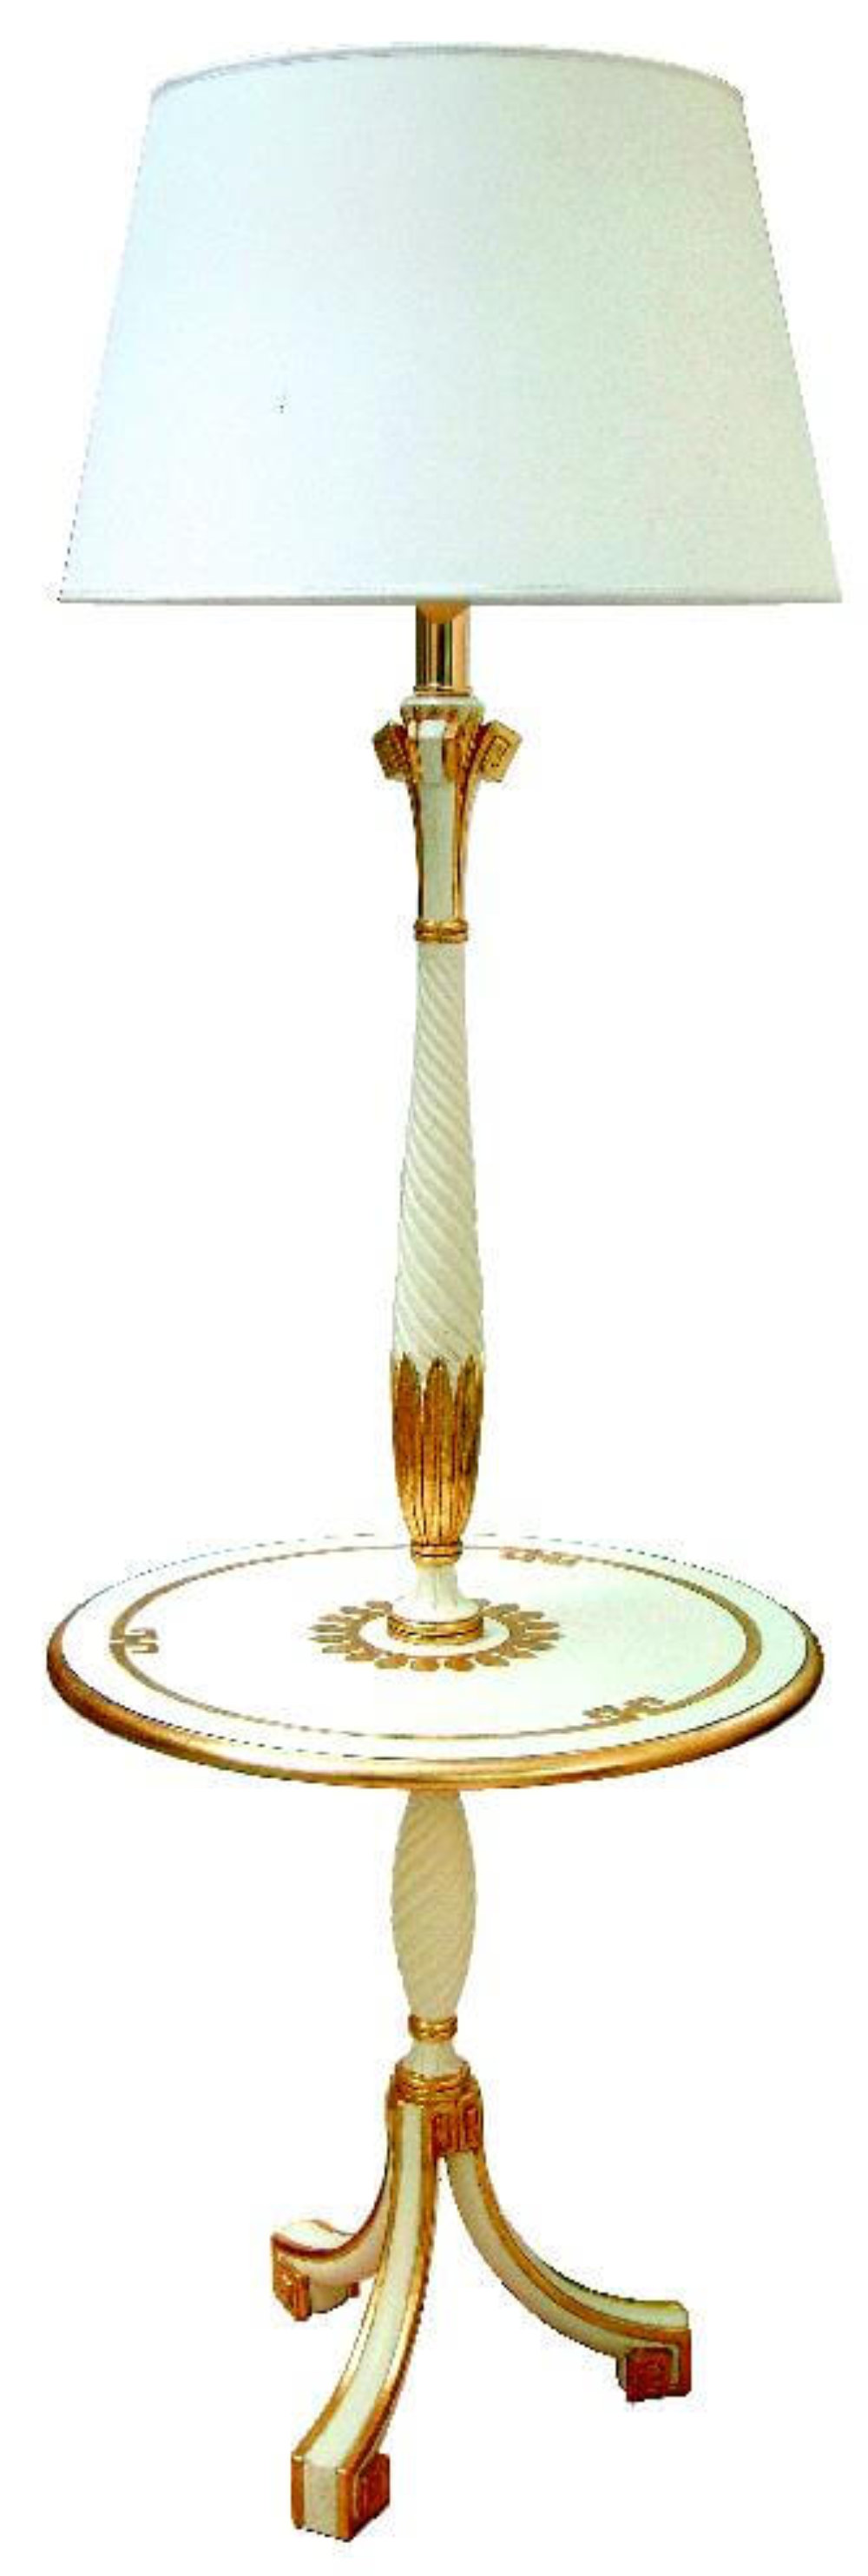 Stehlampe Margaritha mit Tisch, in gold-weiß, Frontalansicht.